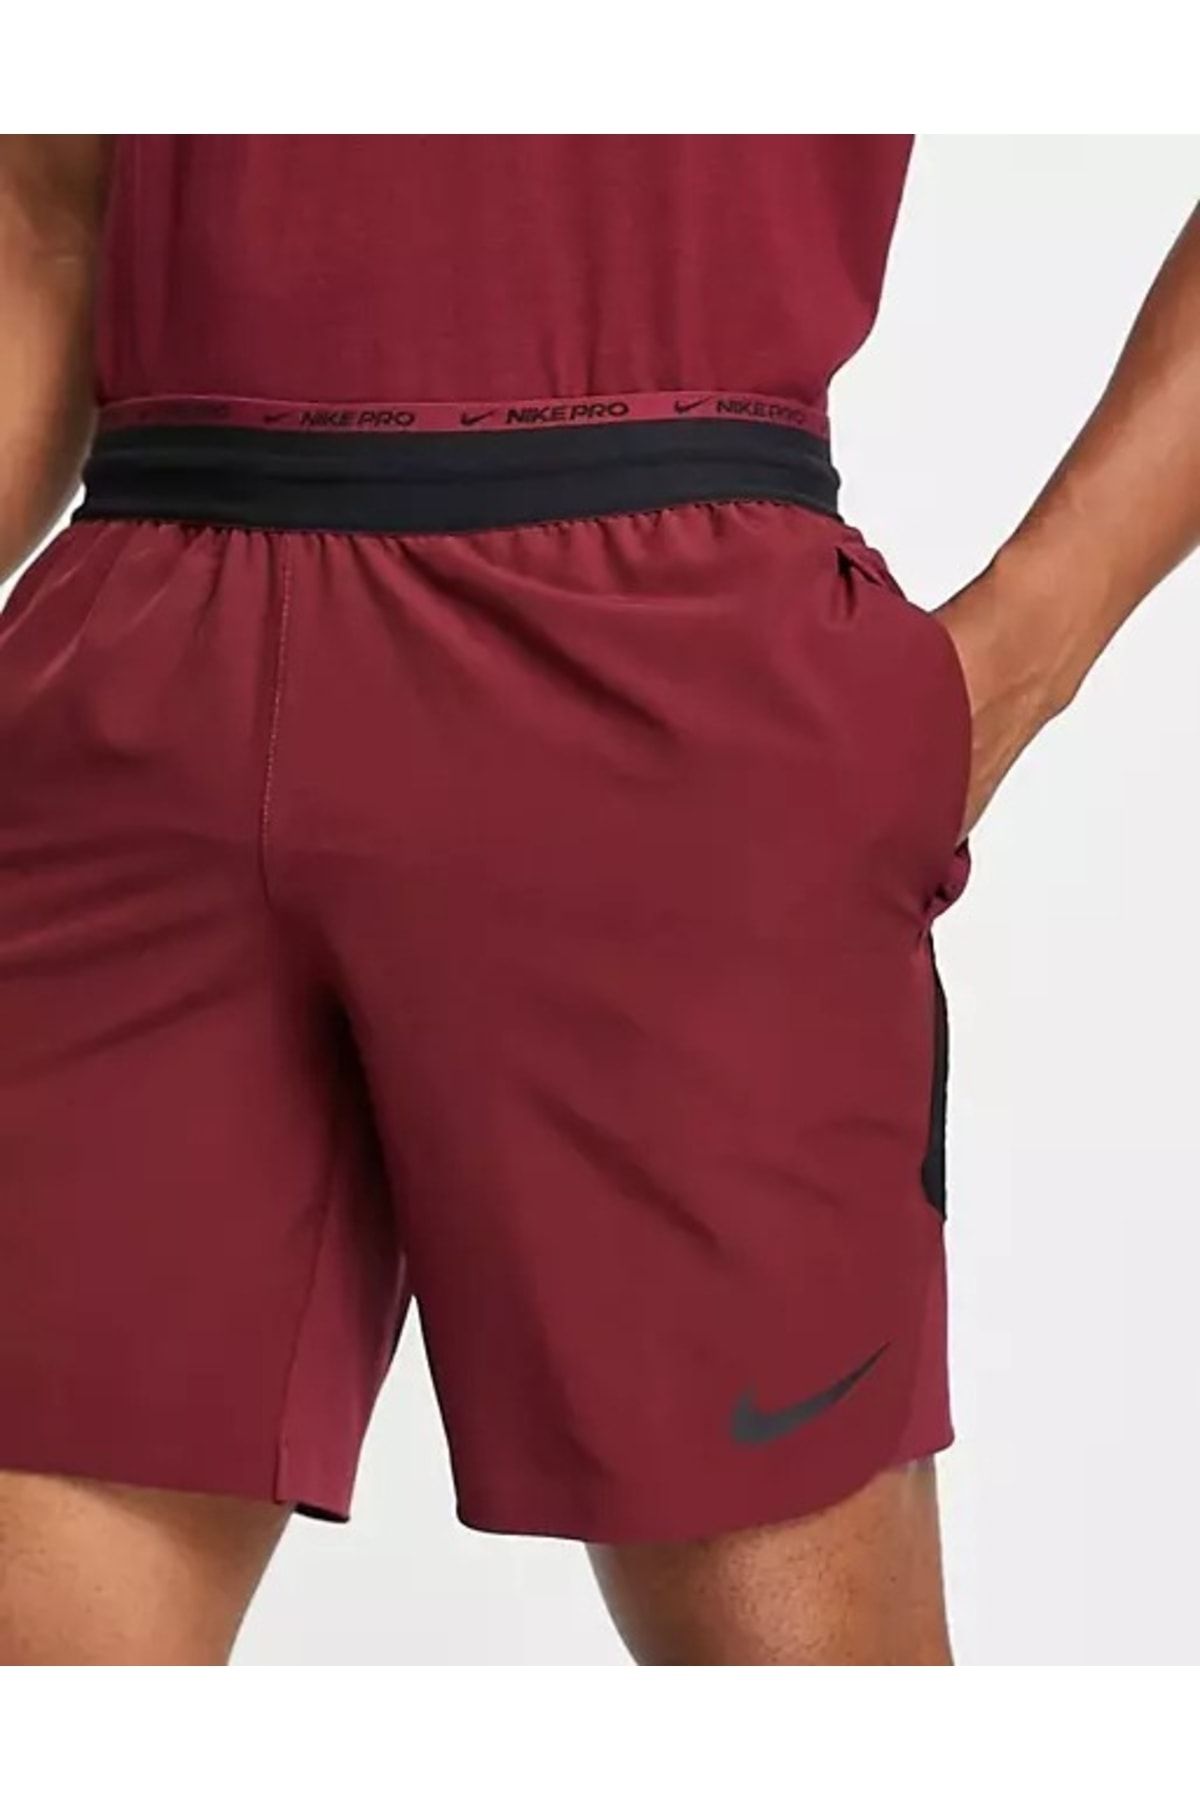 Nike Dri-fıt Flex Rep Pro Collection 20 Cm Astarsız Erkek Antrenman Şortu